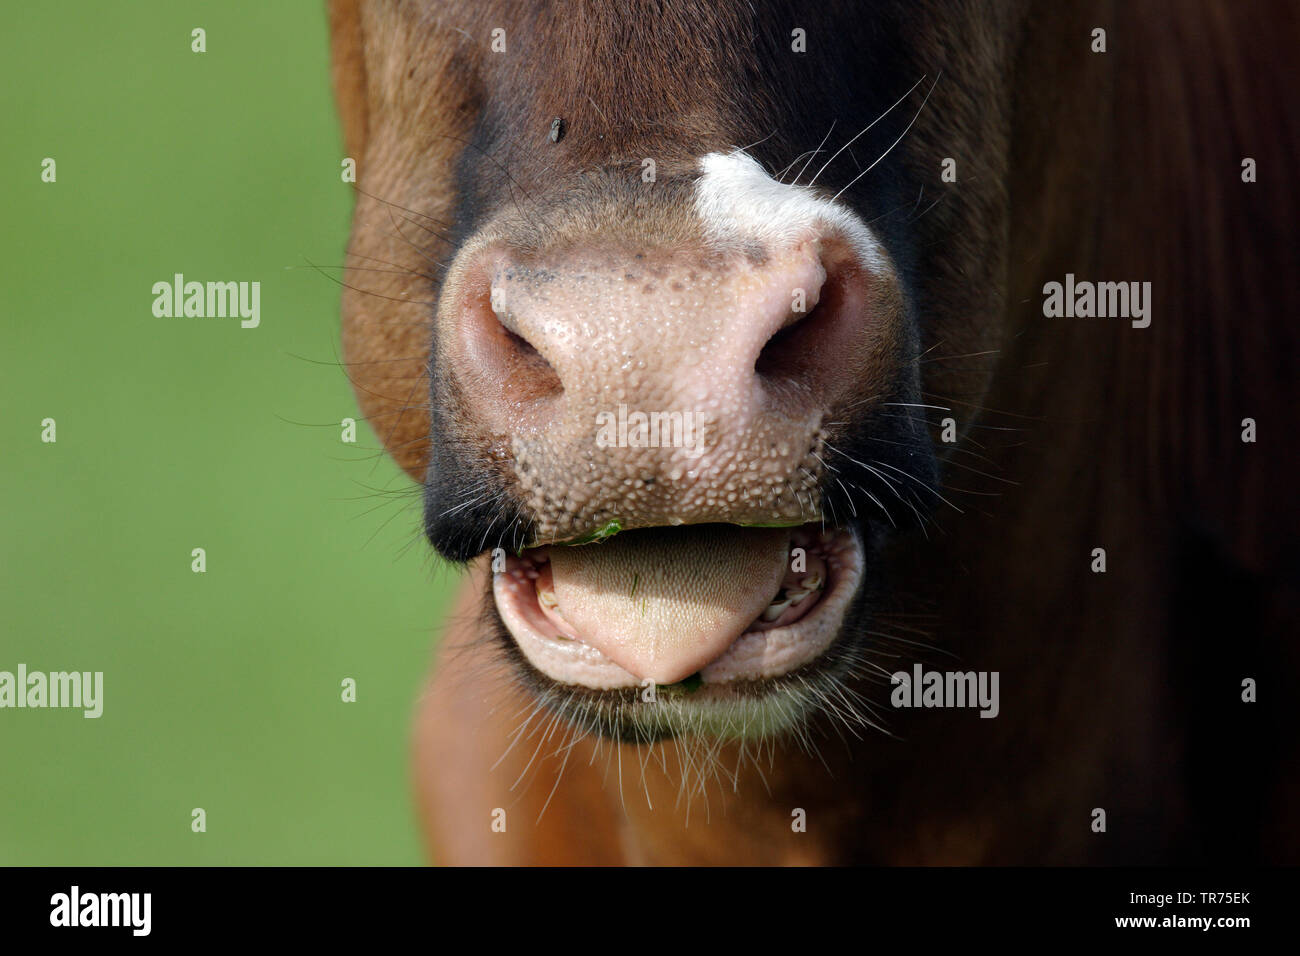 El ganado doméstico (Bos primigenius f. taurus), moviendo la lengua, Países Bajos Foto de stock